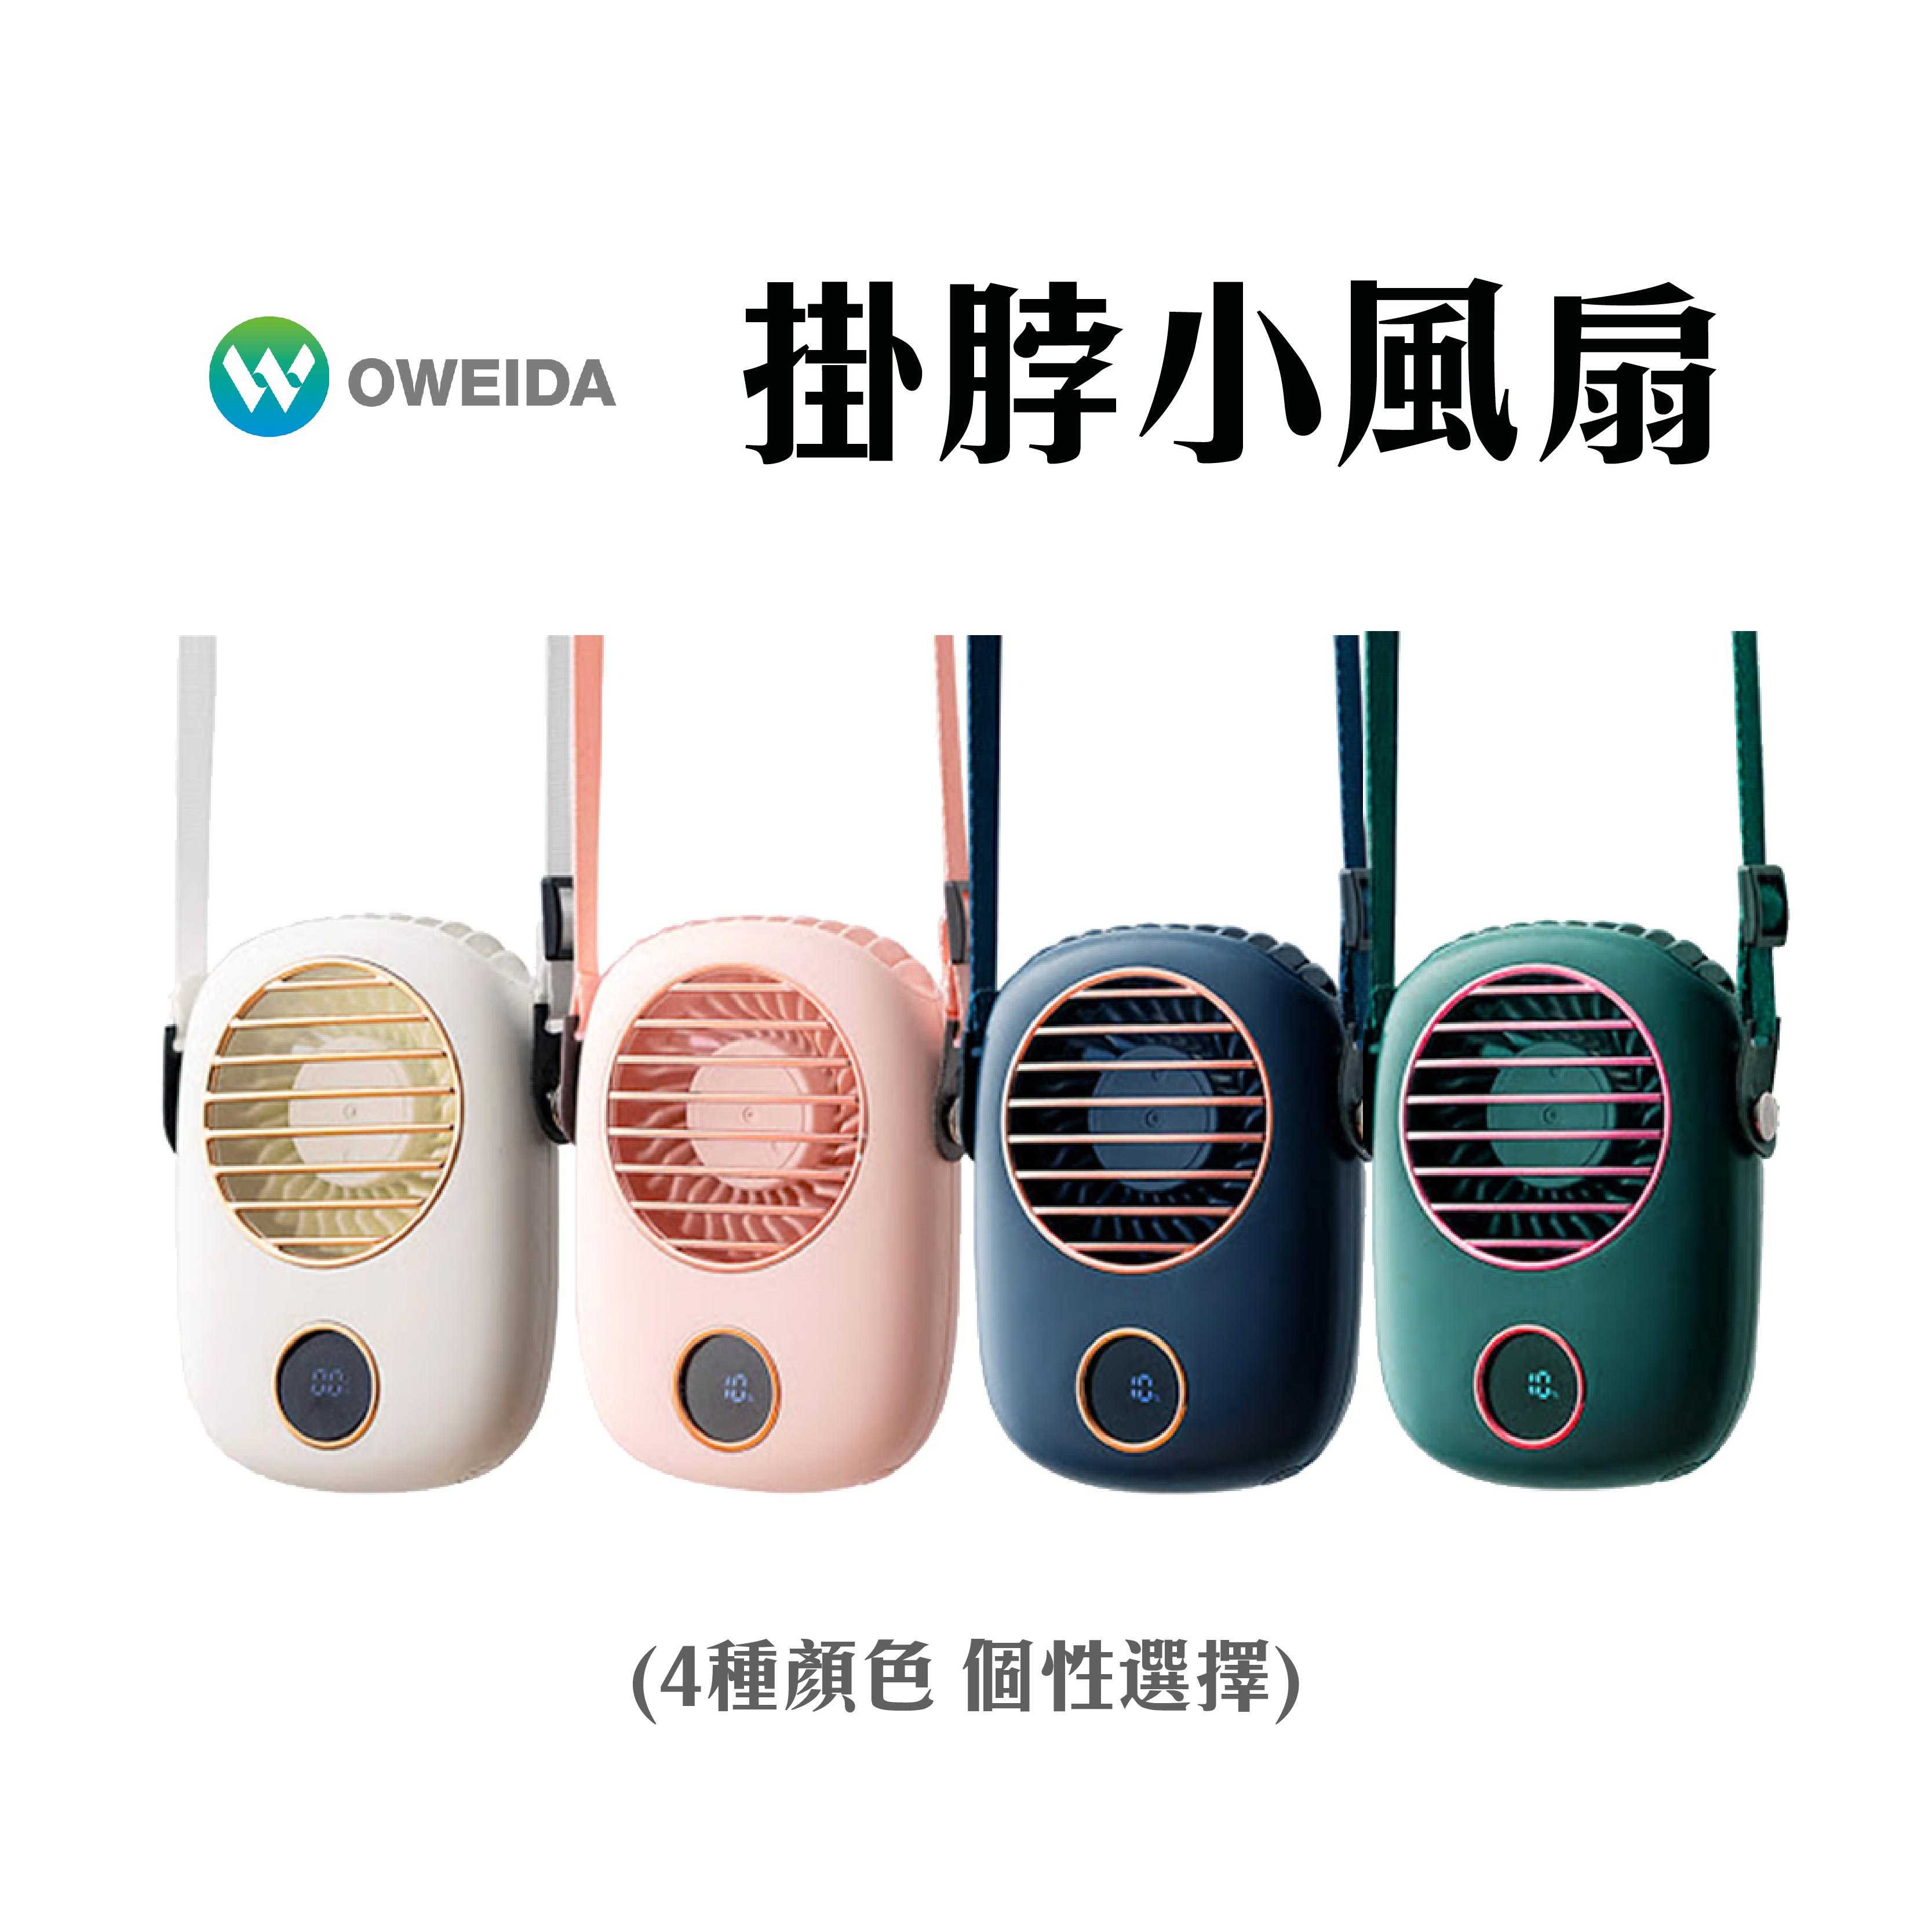 現貨『Oweida HF26 液晶顯示掛脖小風扇』USB風扇,桌上型風扇,掛脖小電扇,便攜電風扇,桌扇,風扇,電風扇